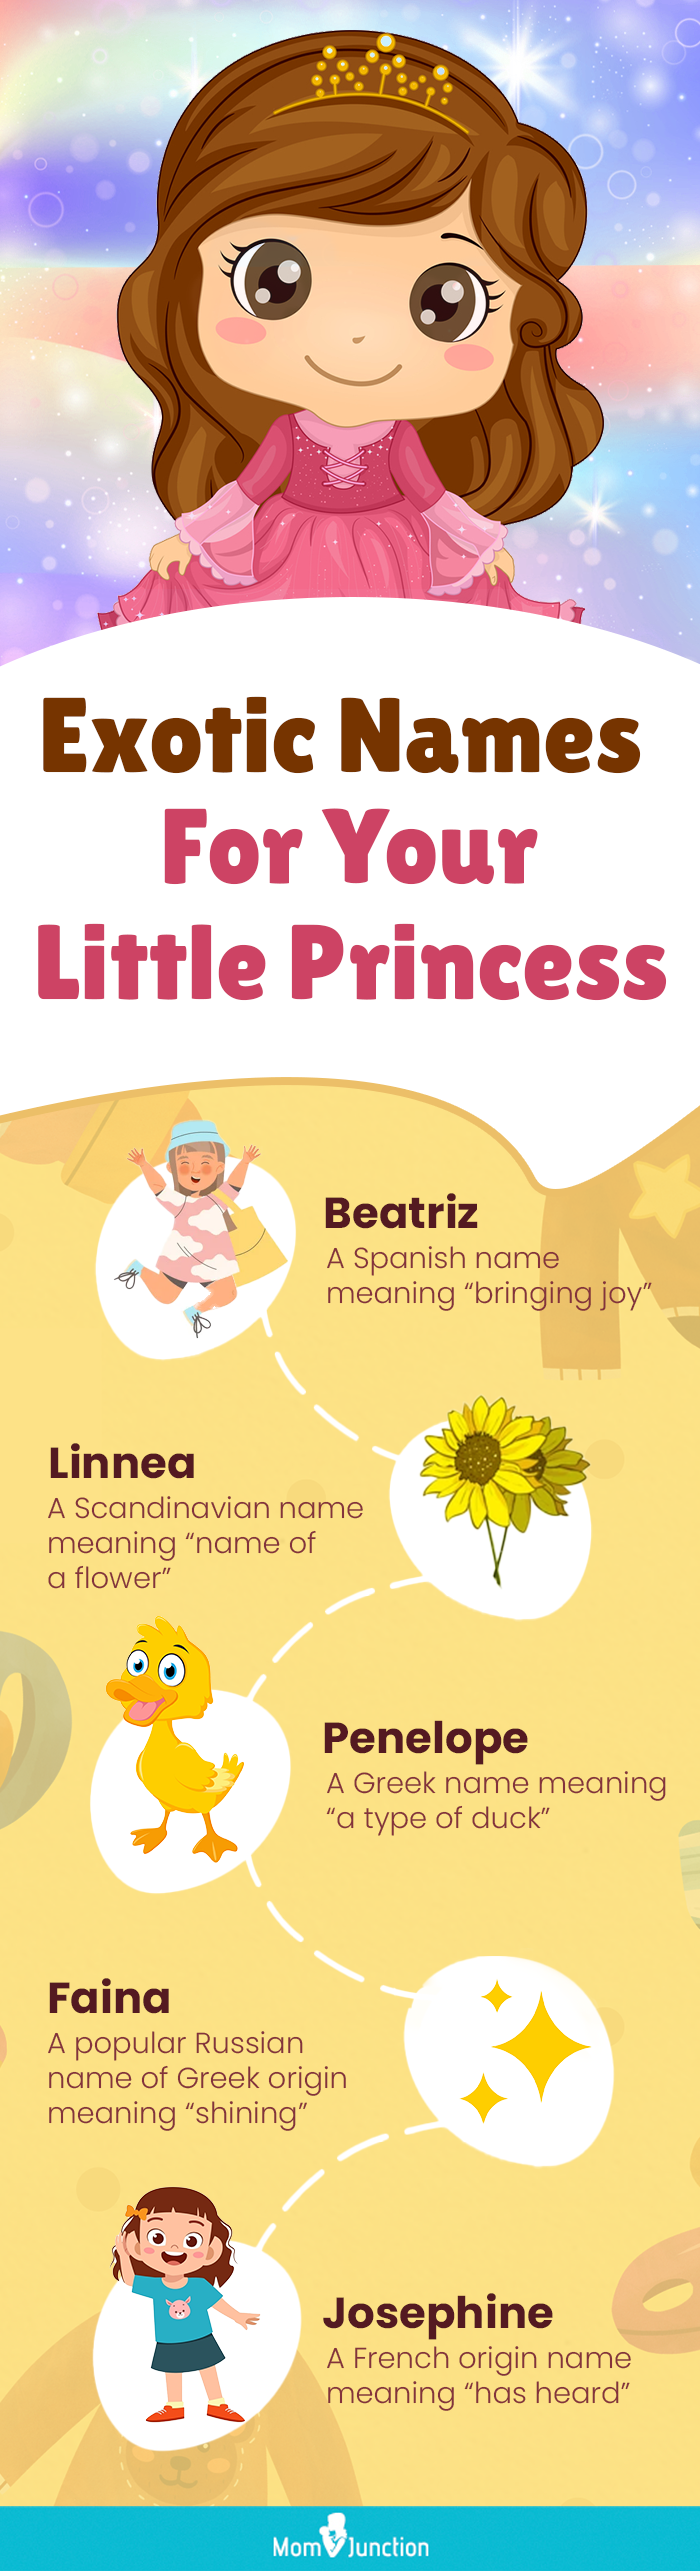 给你的小公主取个奇异的名字(信息图)